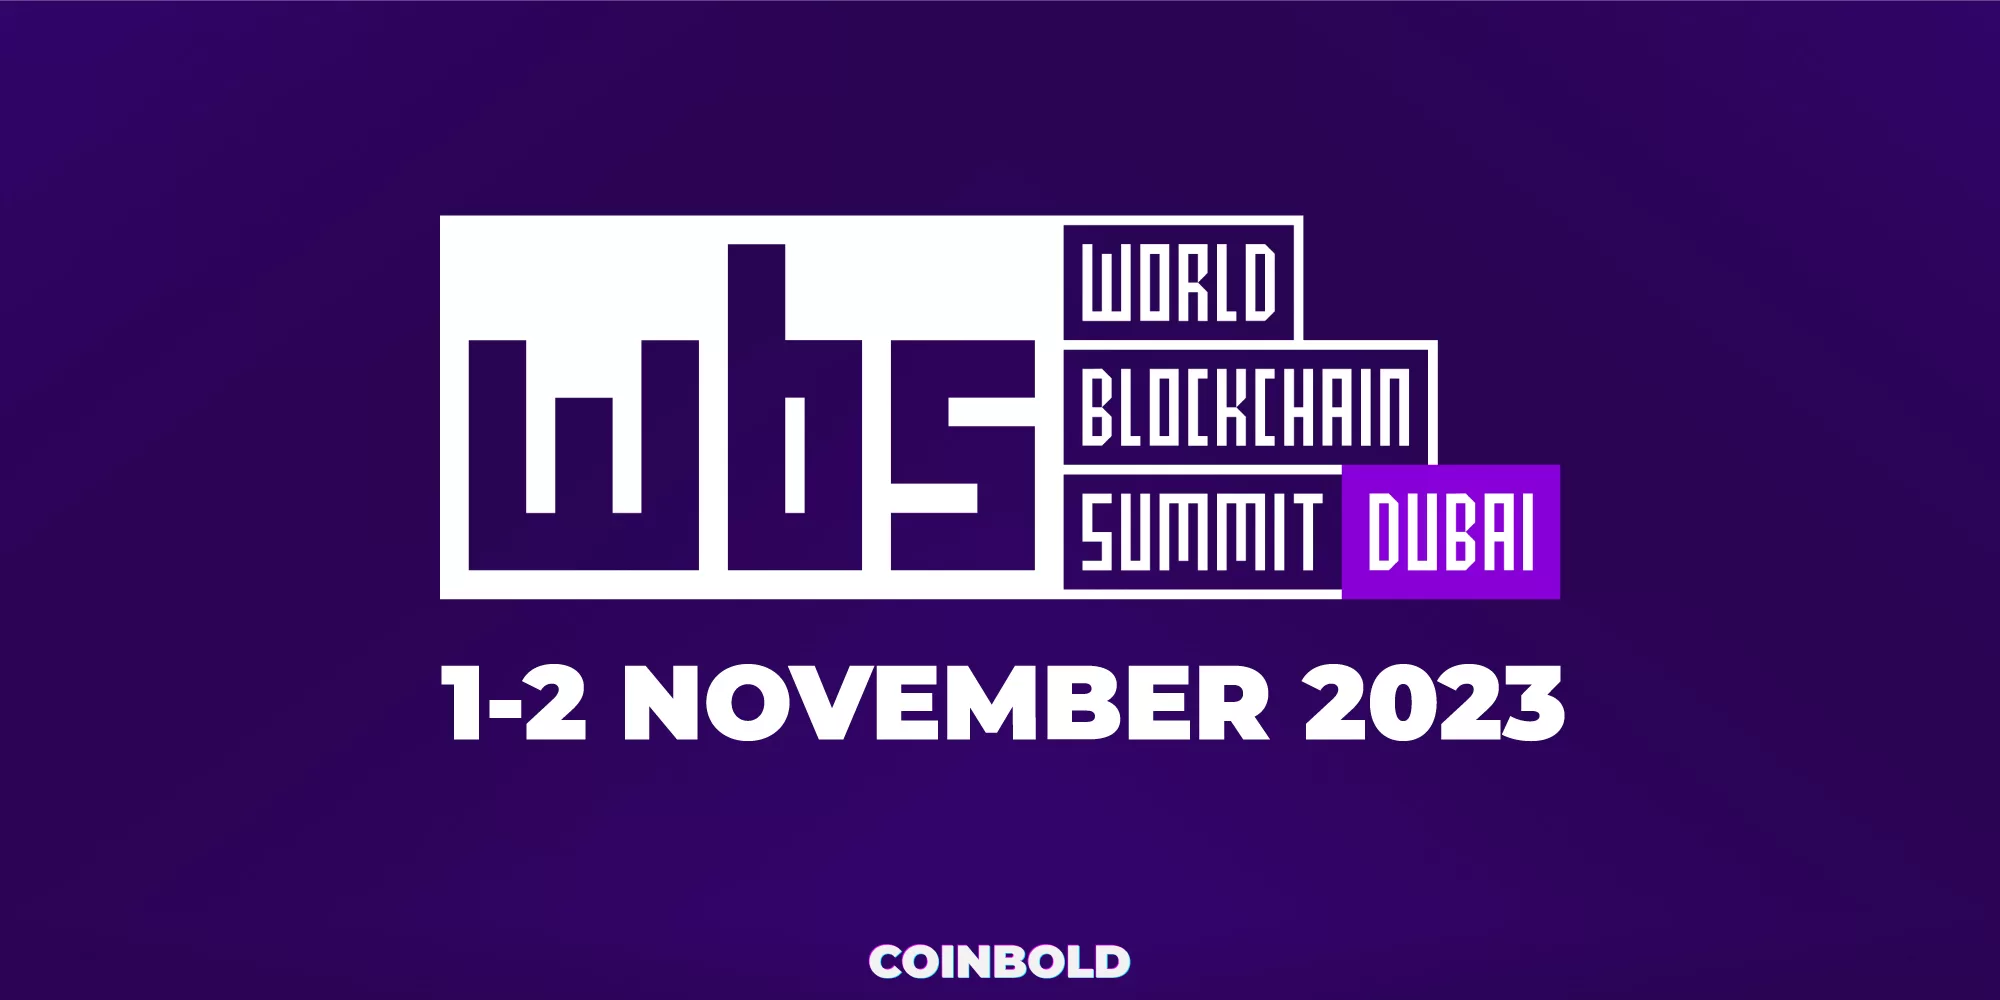 World Blockchain Summit Dubai 2023 jpg.webp